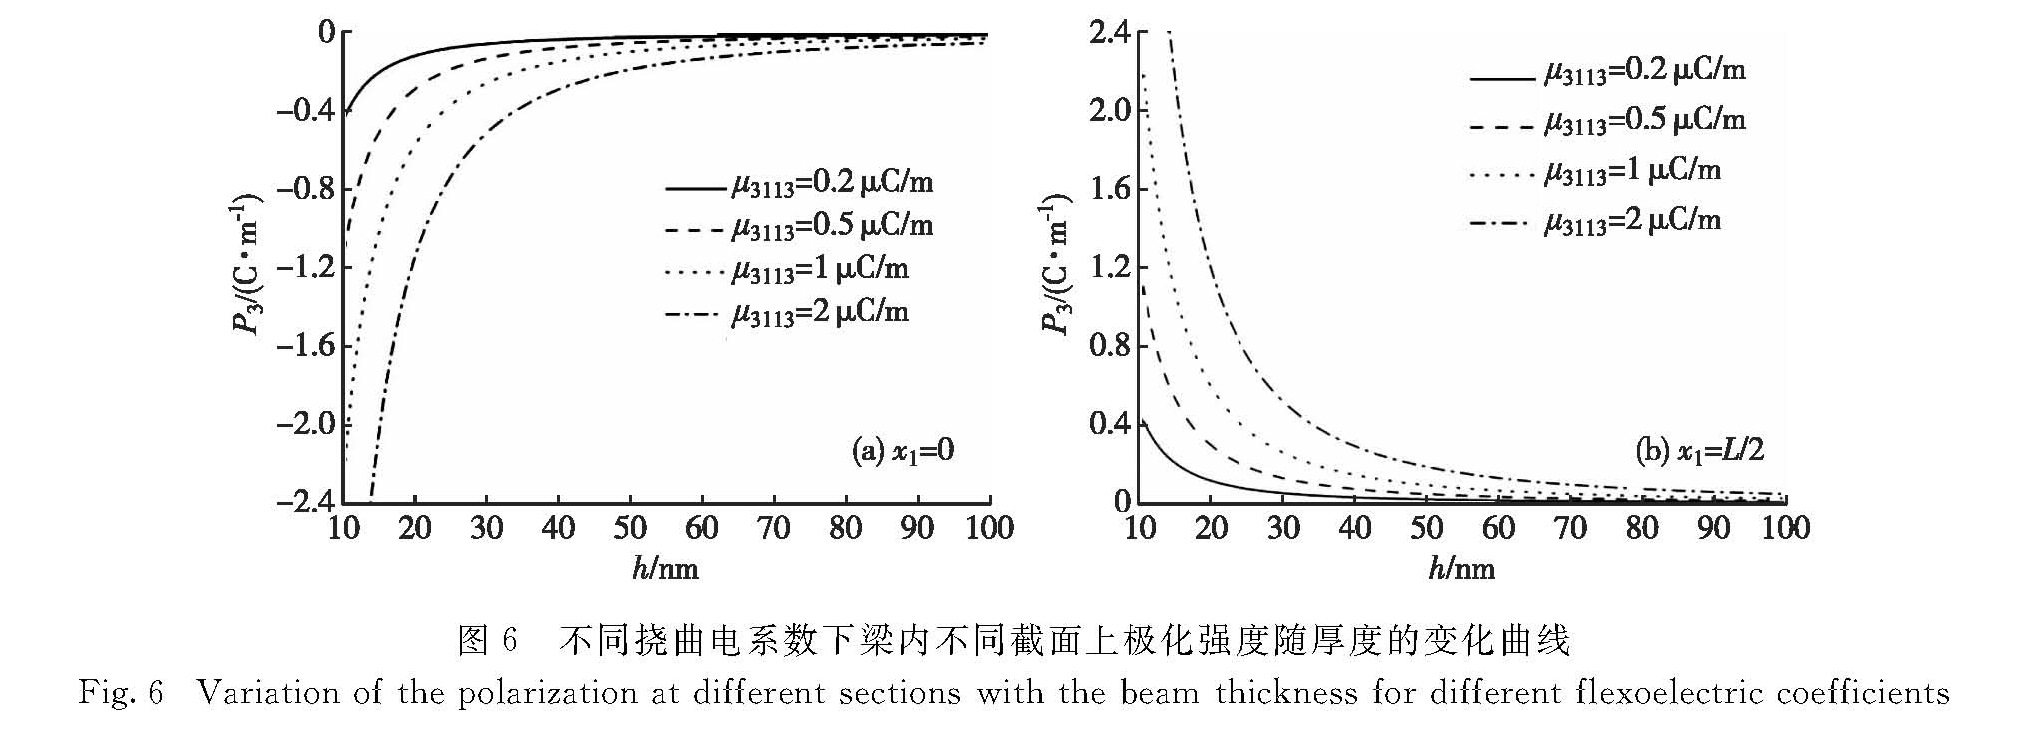 图6 不同挠曲电系数下梁内不同截面上极化强度随厚度的变化曲线<br/>Fig.6 Variation of the polarization at different sections with the beam thickness for different flexoelectric coefficients